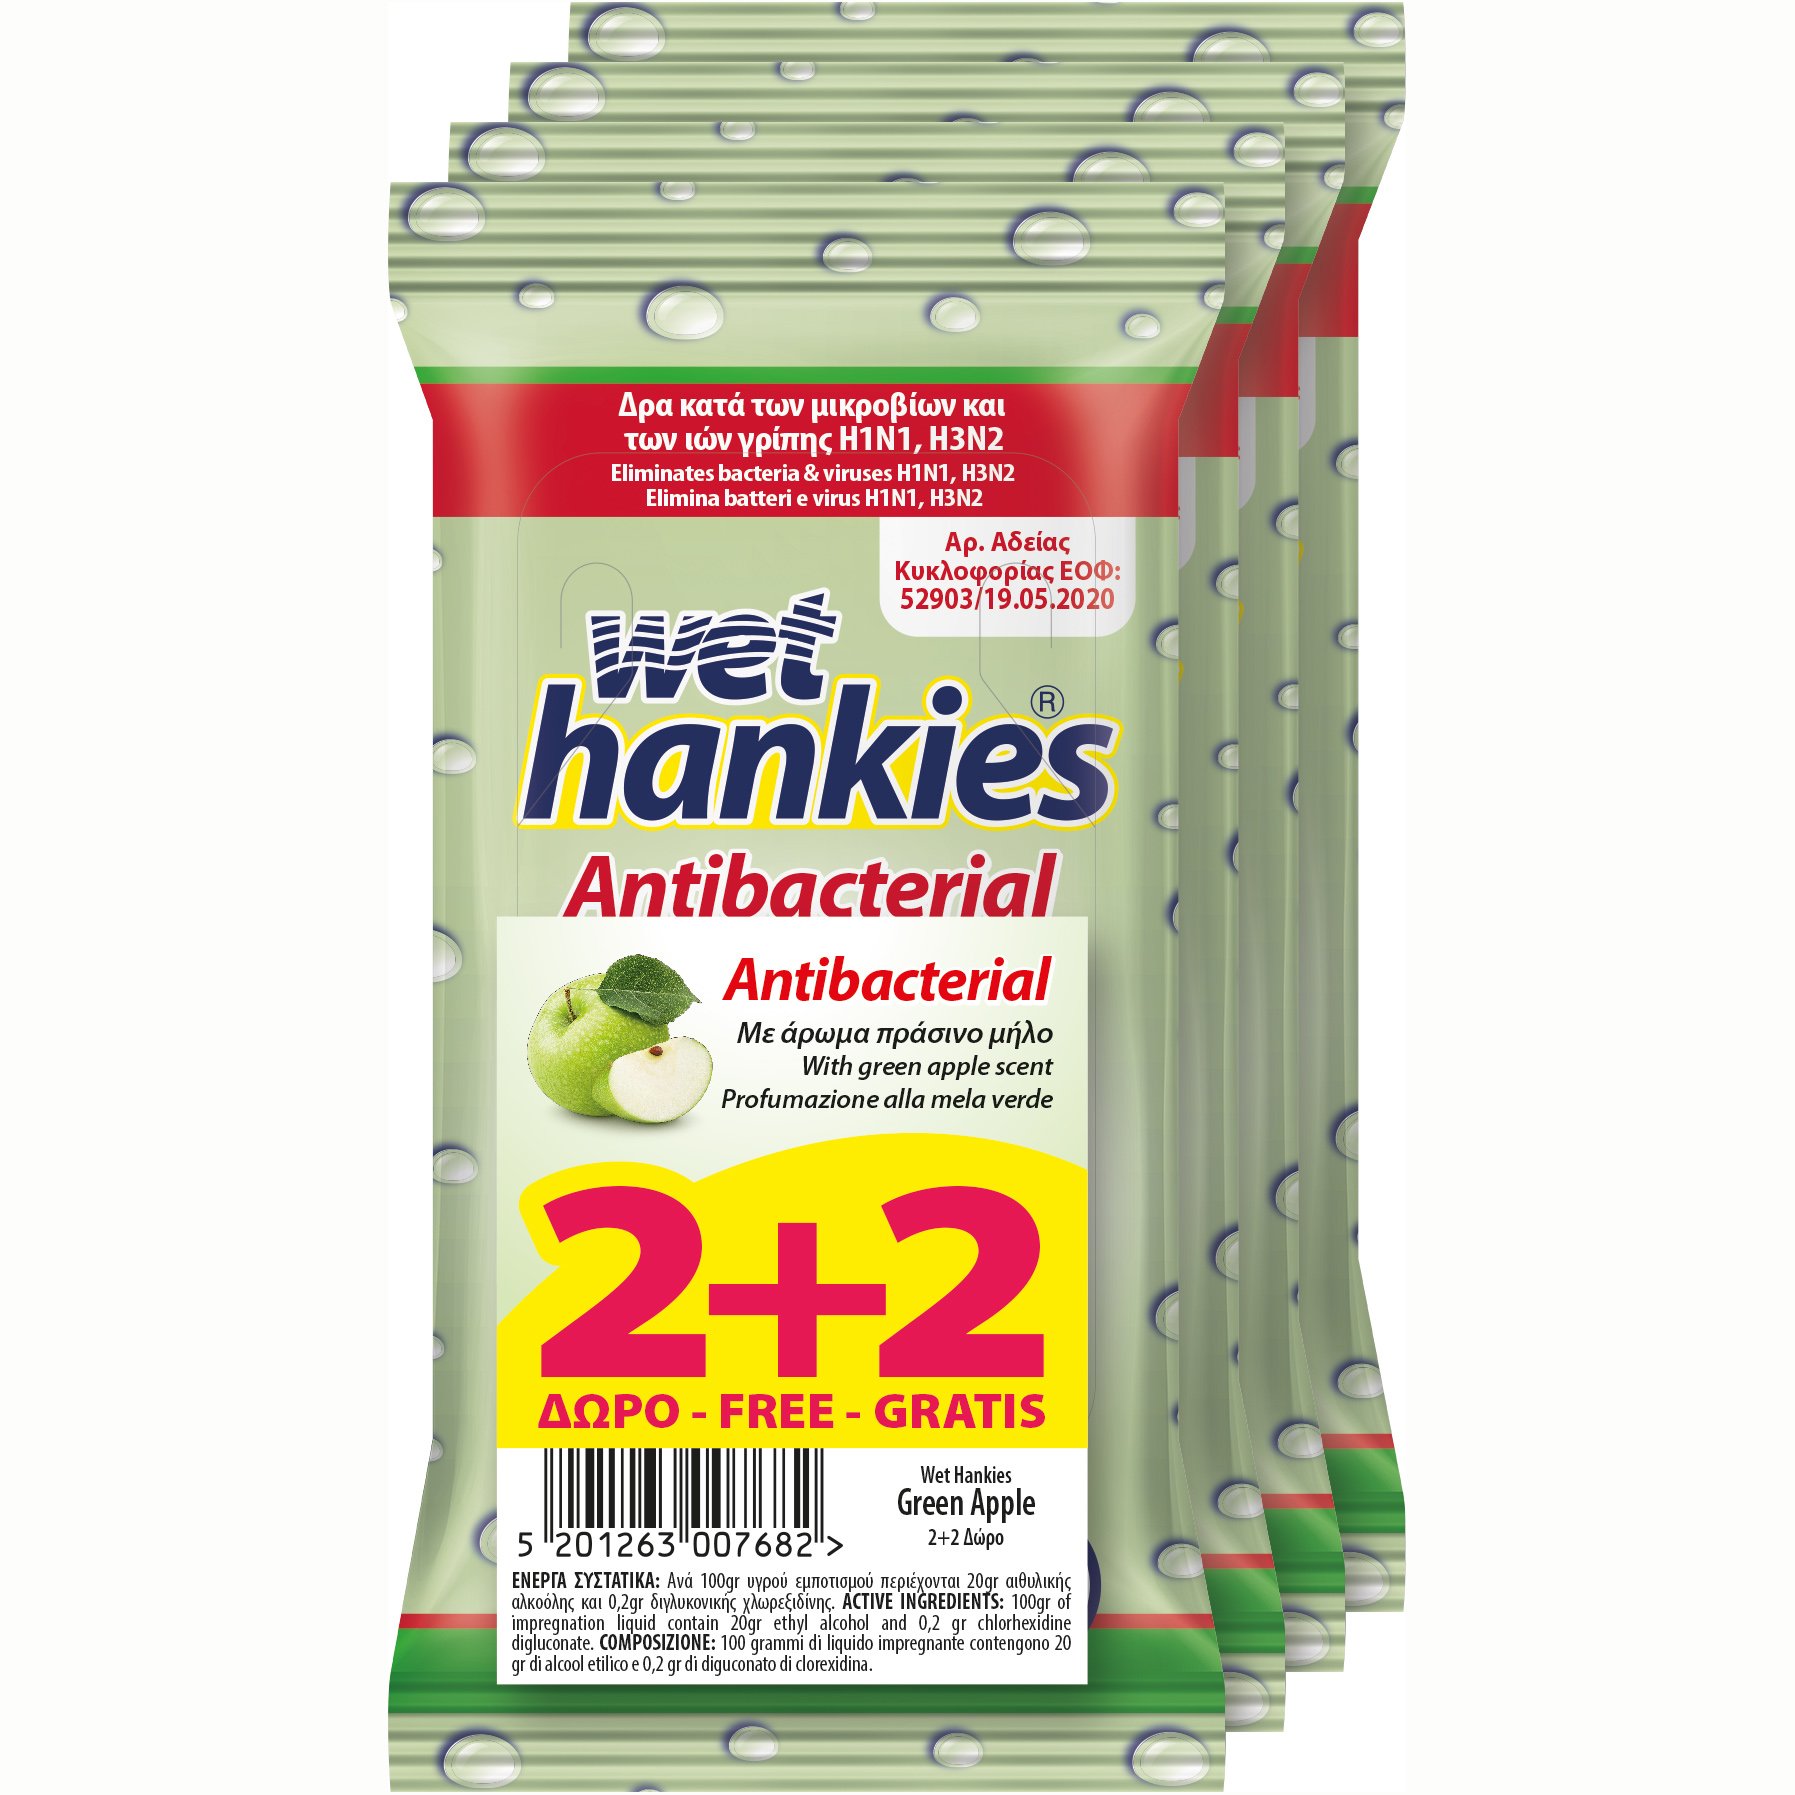 ΜΕΓΑ Wet Hankies Promo Pack Antibacterial Green Apple Αντισηπτικά Μαντηλάκια που Δρουν Κατά των Μικροβίων & Ιών Γρίπης 4x15Τεμάχια